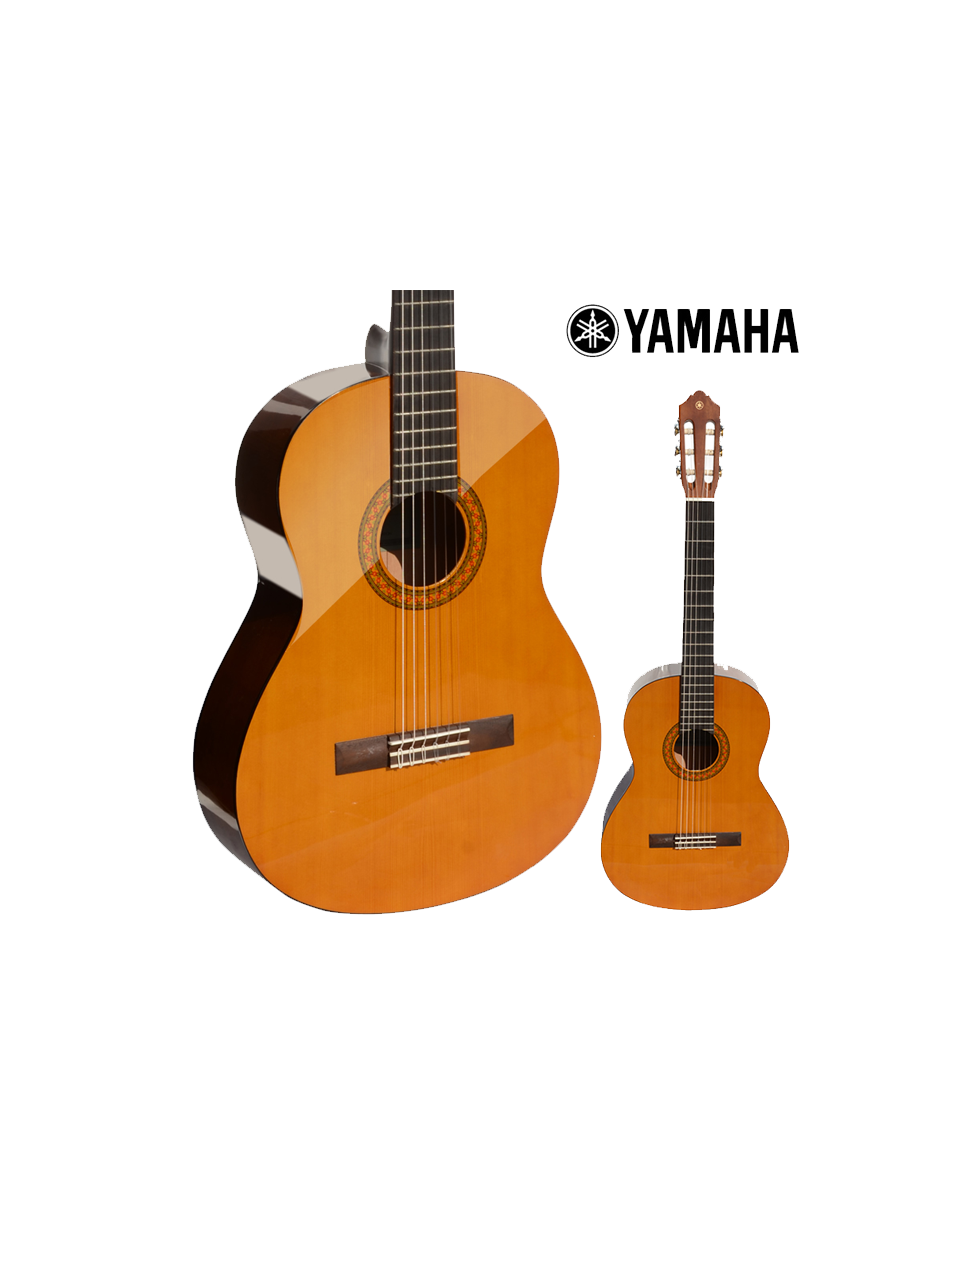 Yamaha-Guitar-Classic-CG162C.png